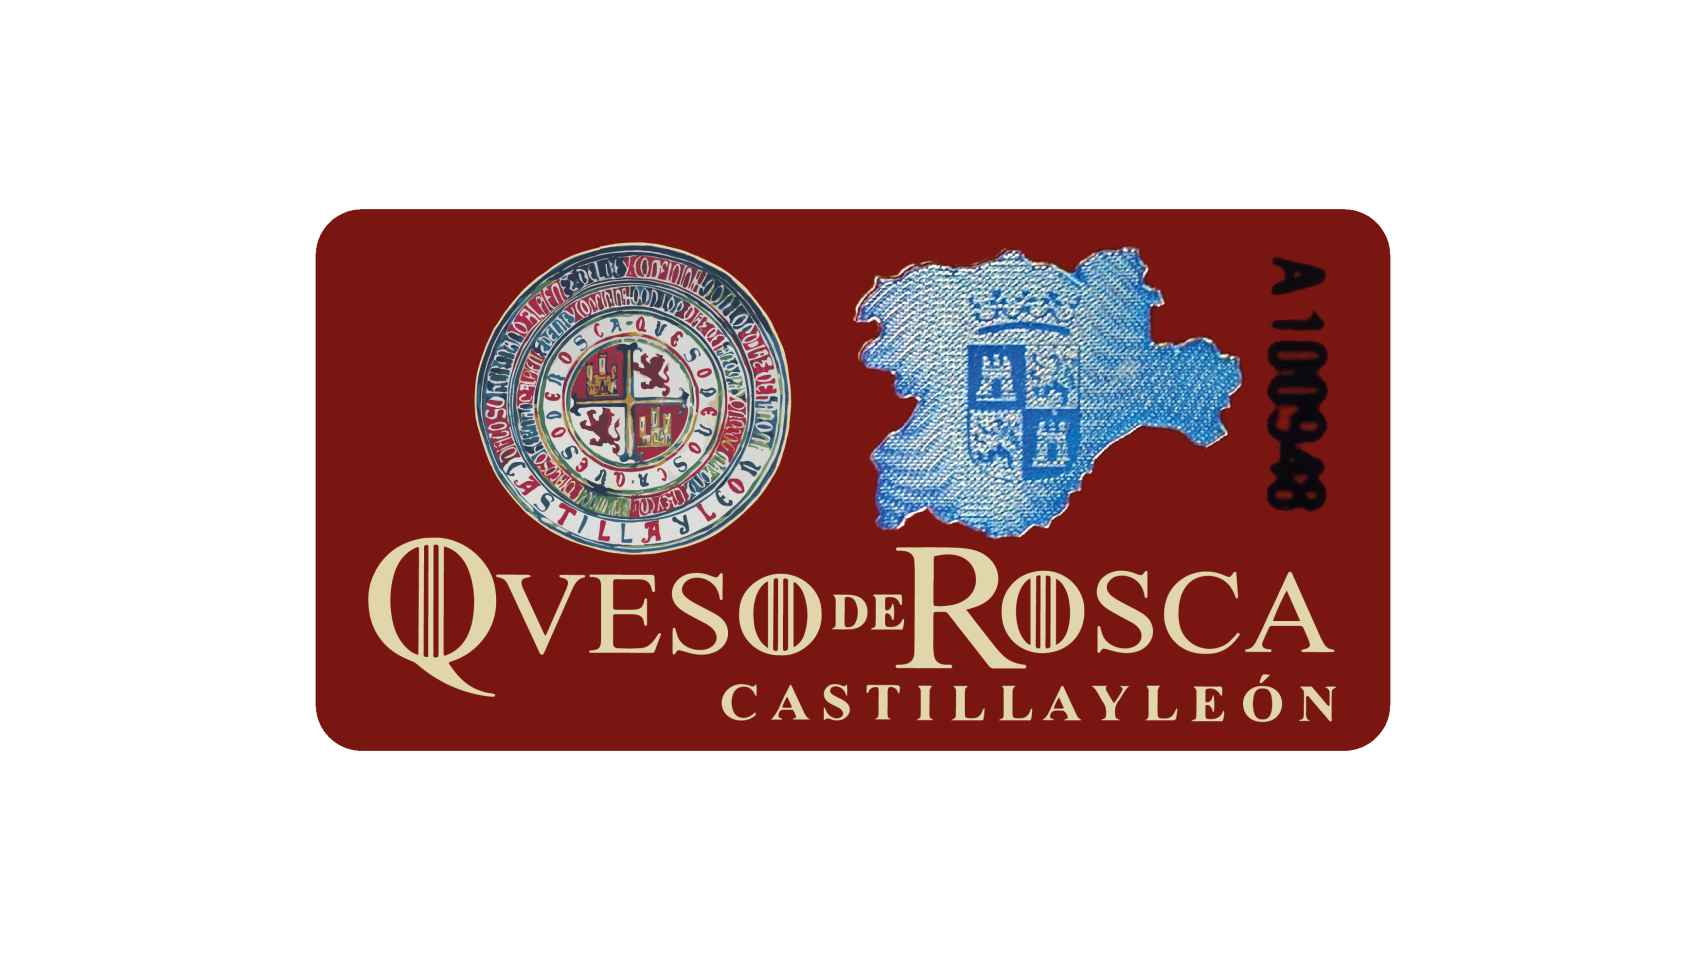 Contraetiqueta oficial de Queso de Rosca Castilla y León.